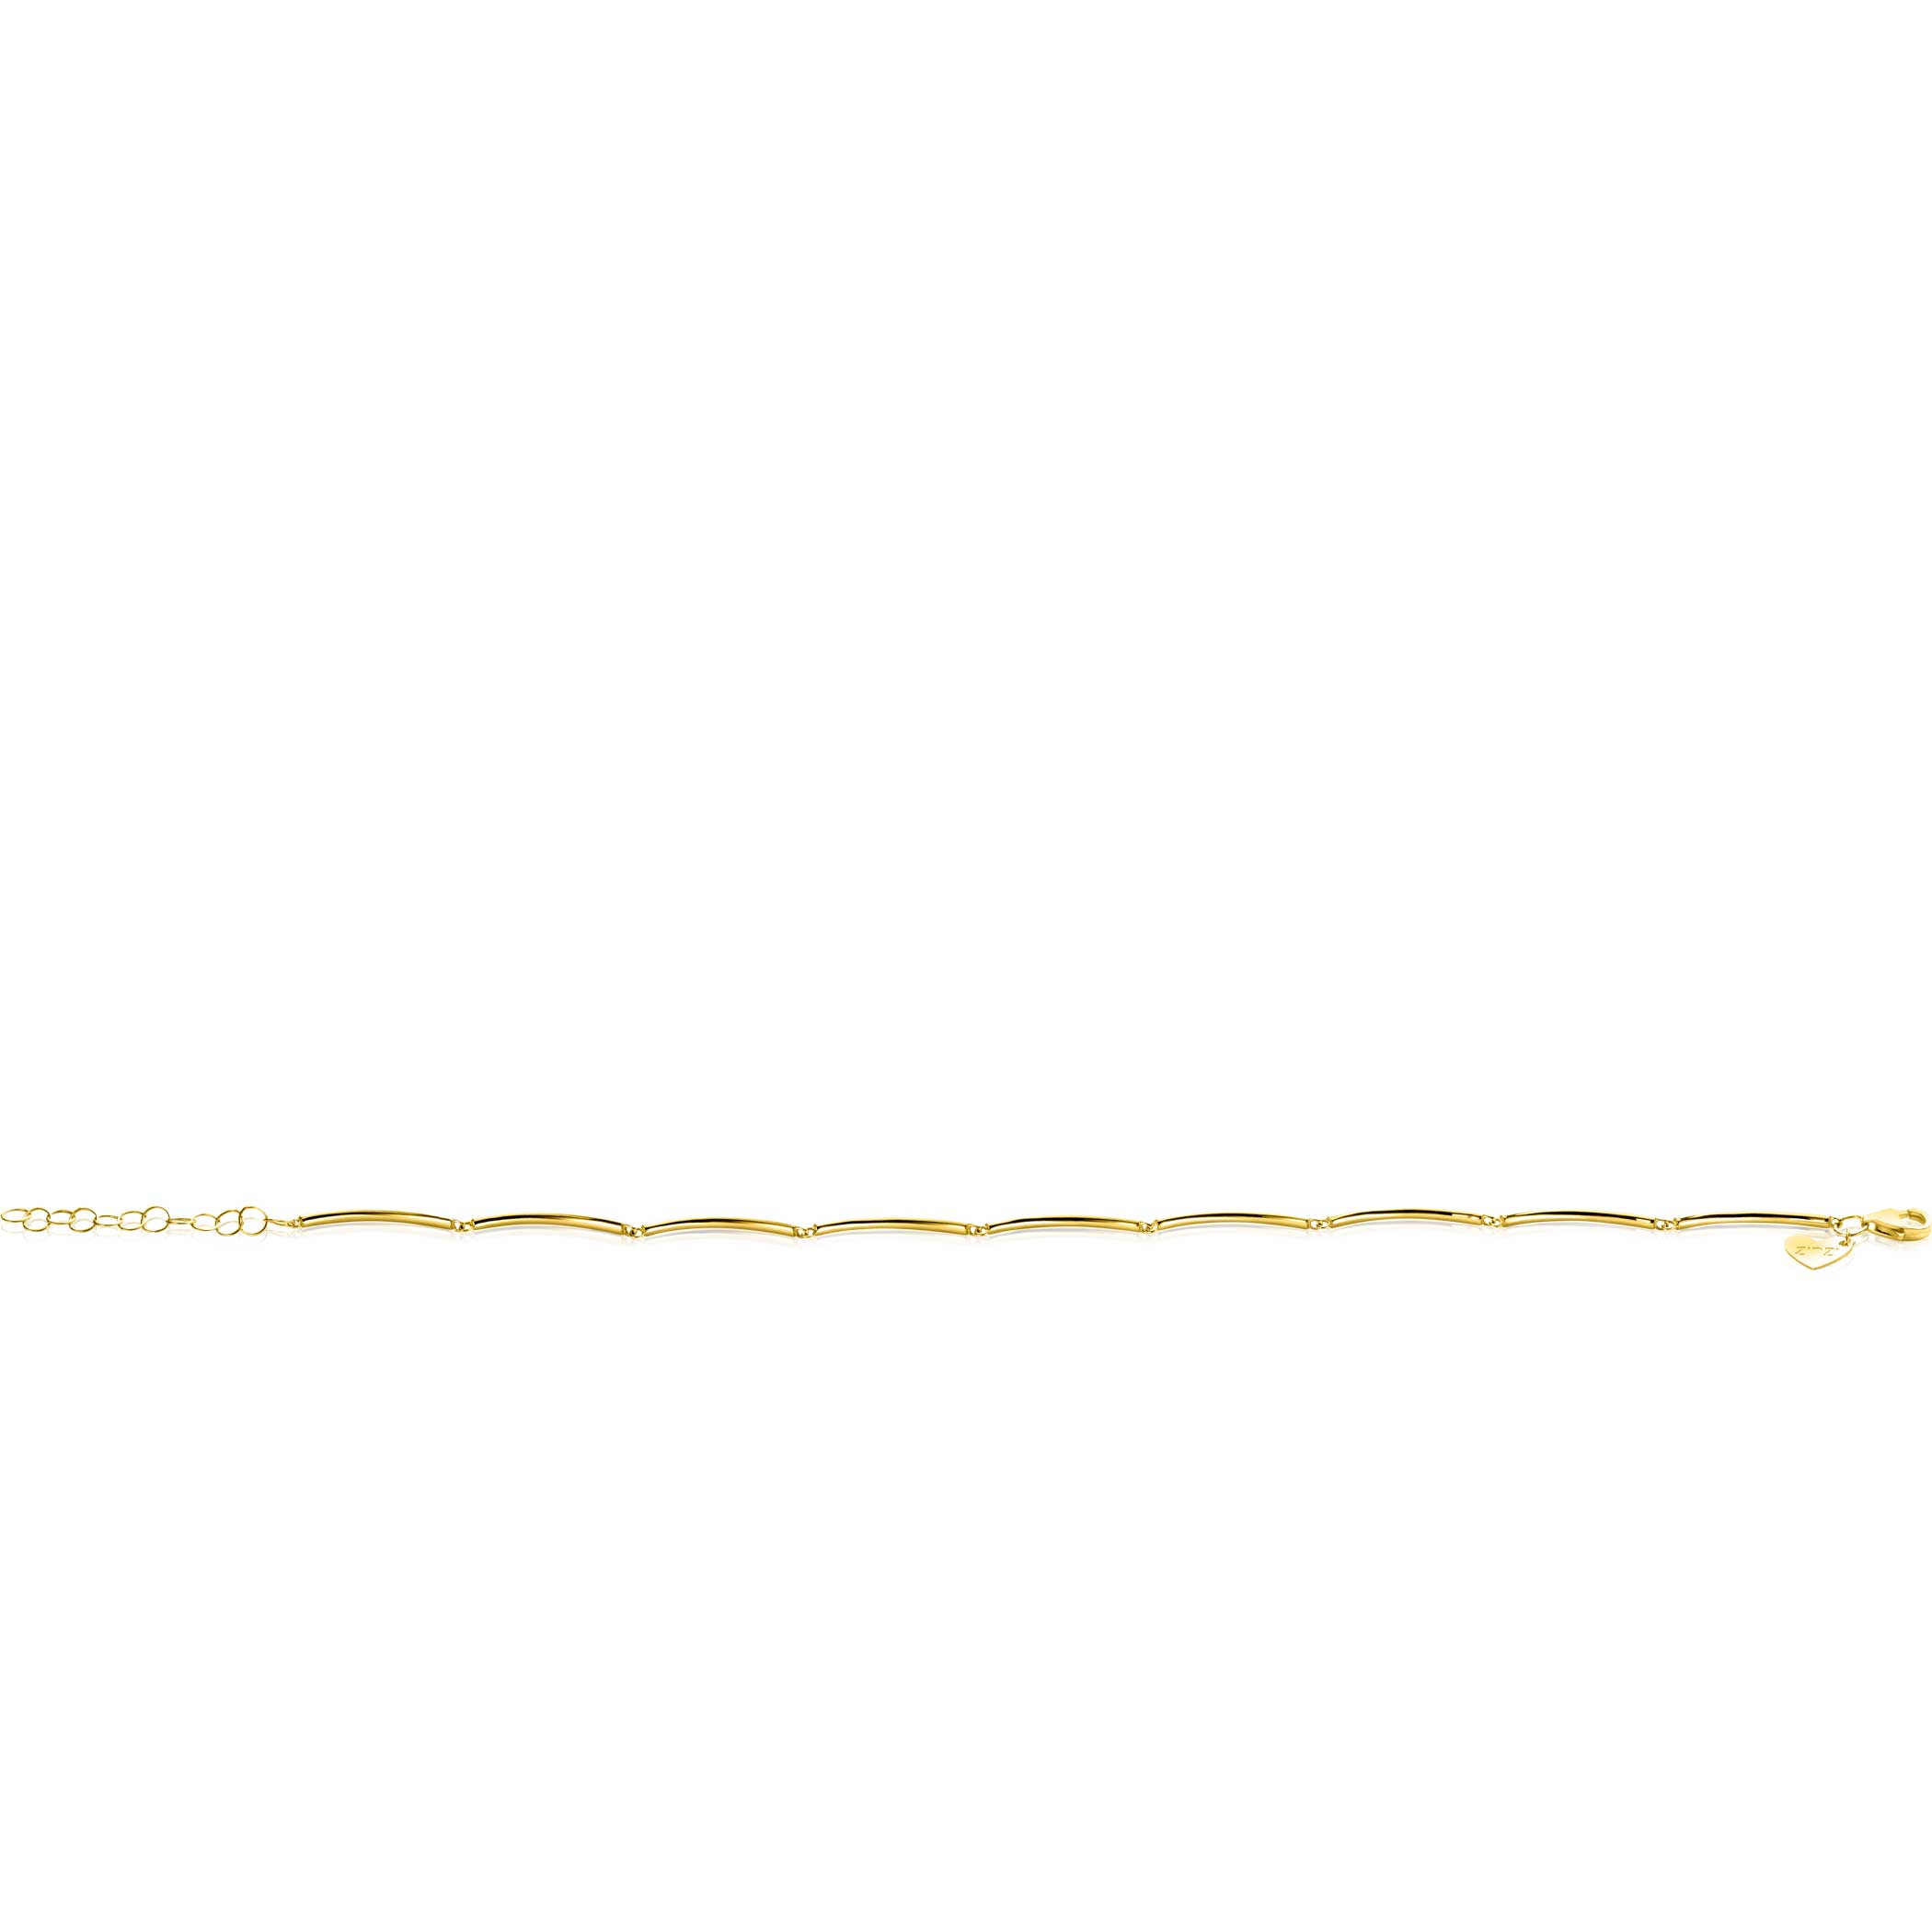 ZINZI Gold 14 krt gouden armband met langwerpige glanzende staafjes 1,6mm breed 16,5-19cm ZGA461
